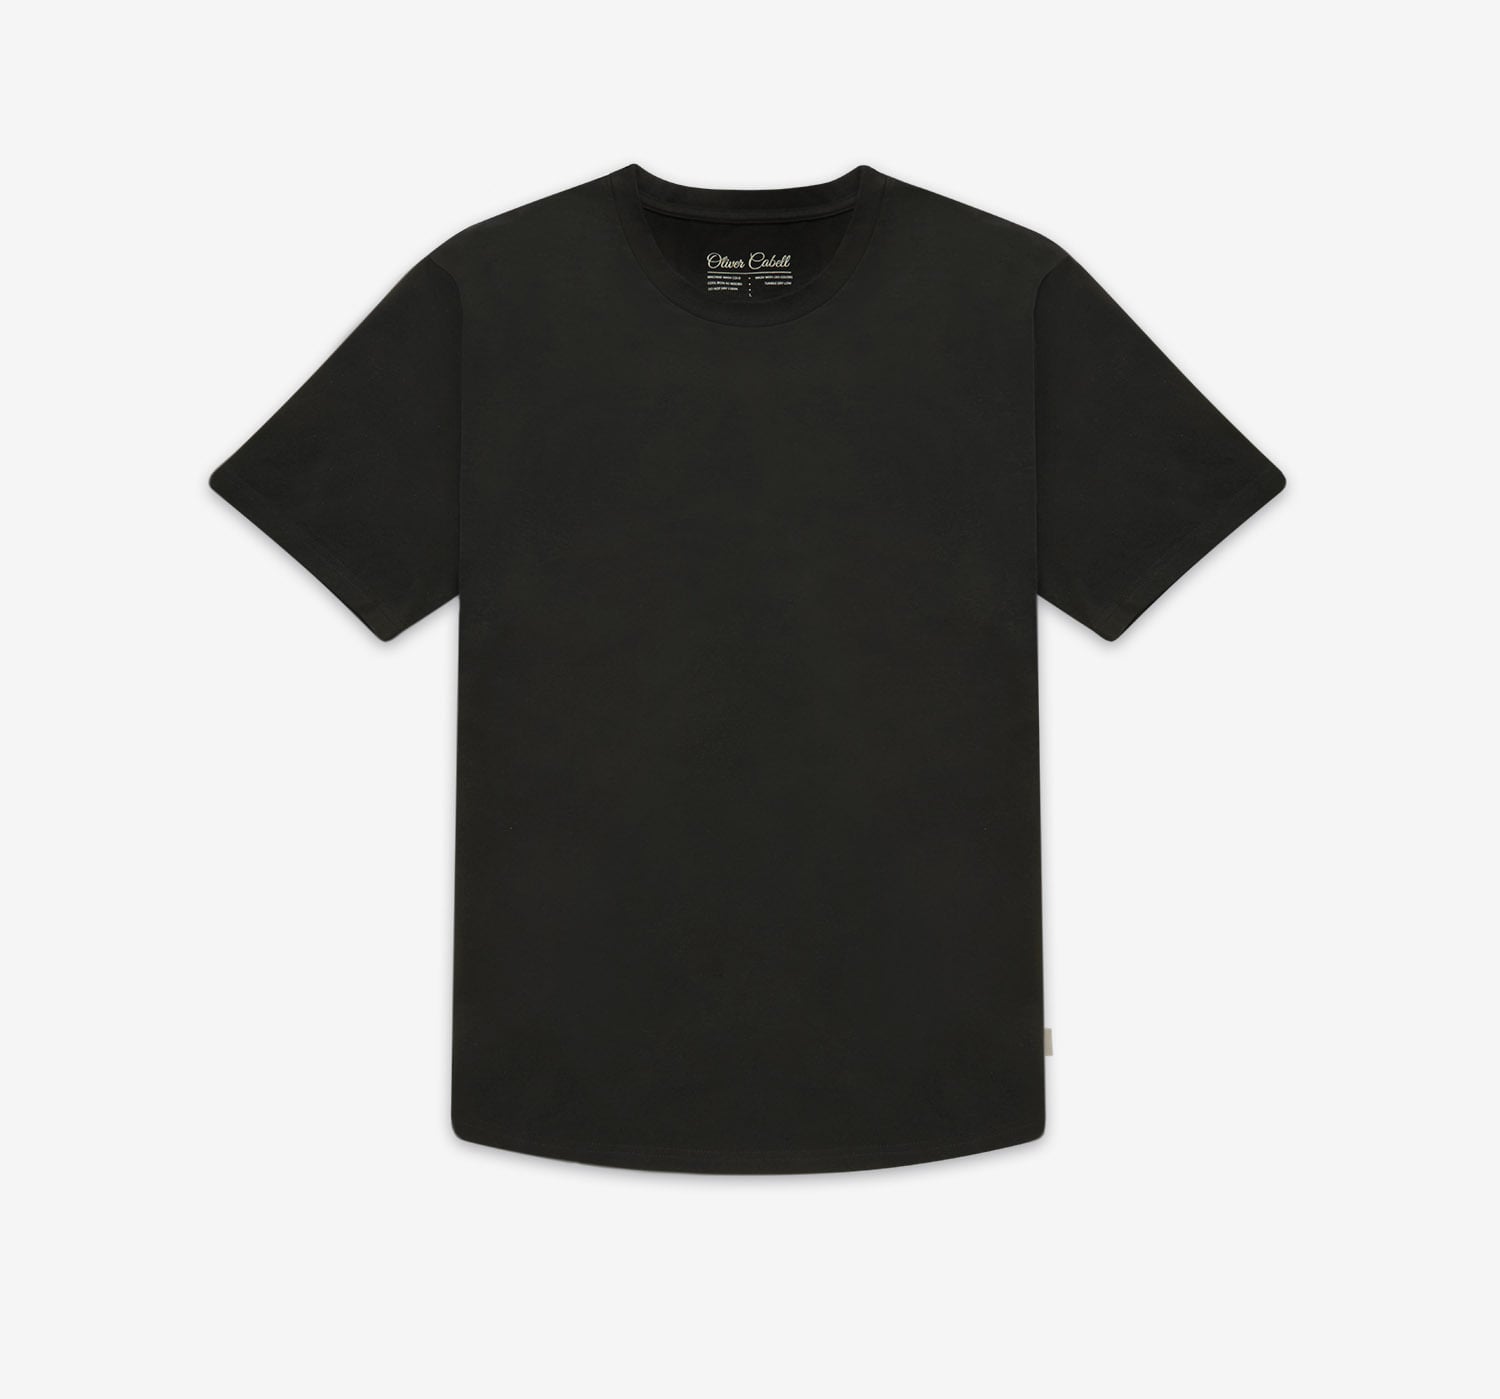 Men's Black Shirts  How To Wear A Black Shirt